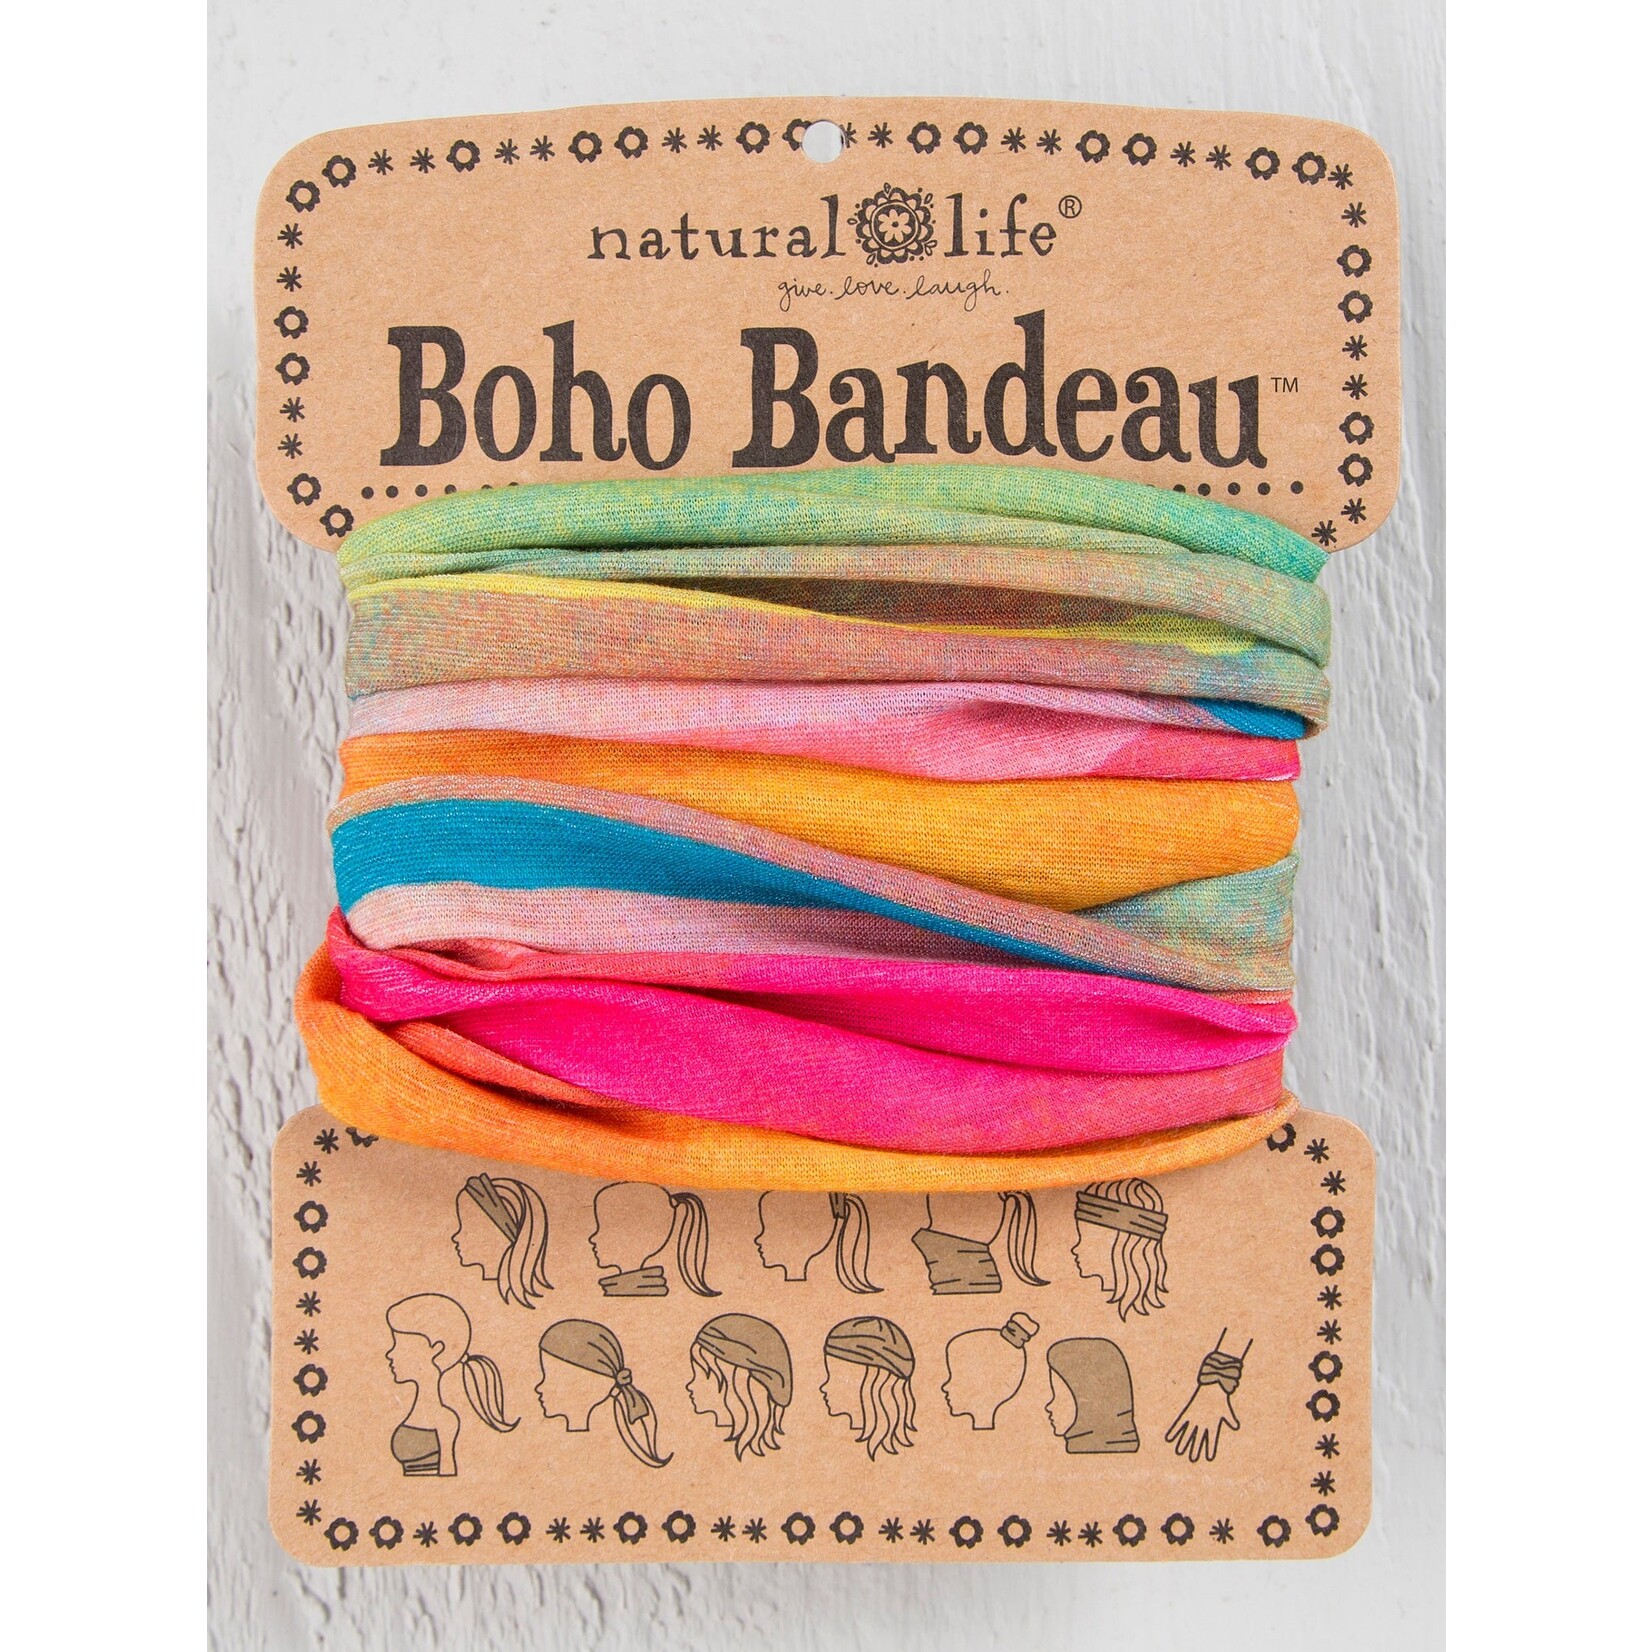 Boho Bandeau Hot Pink Rainbow - The Blue House